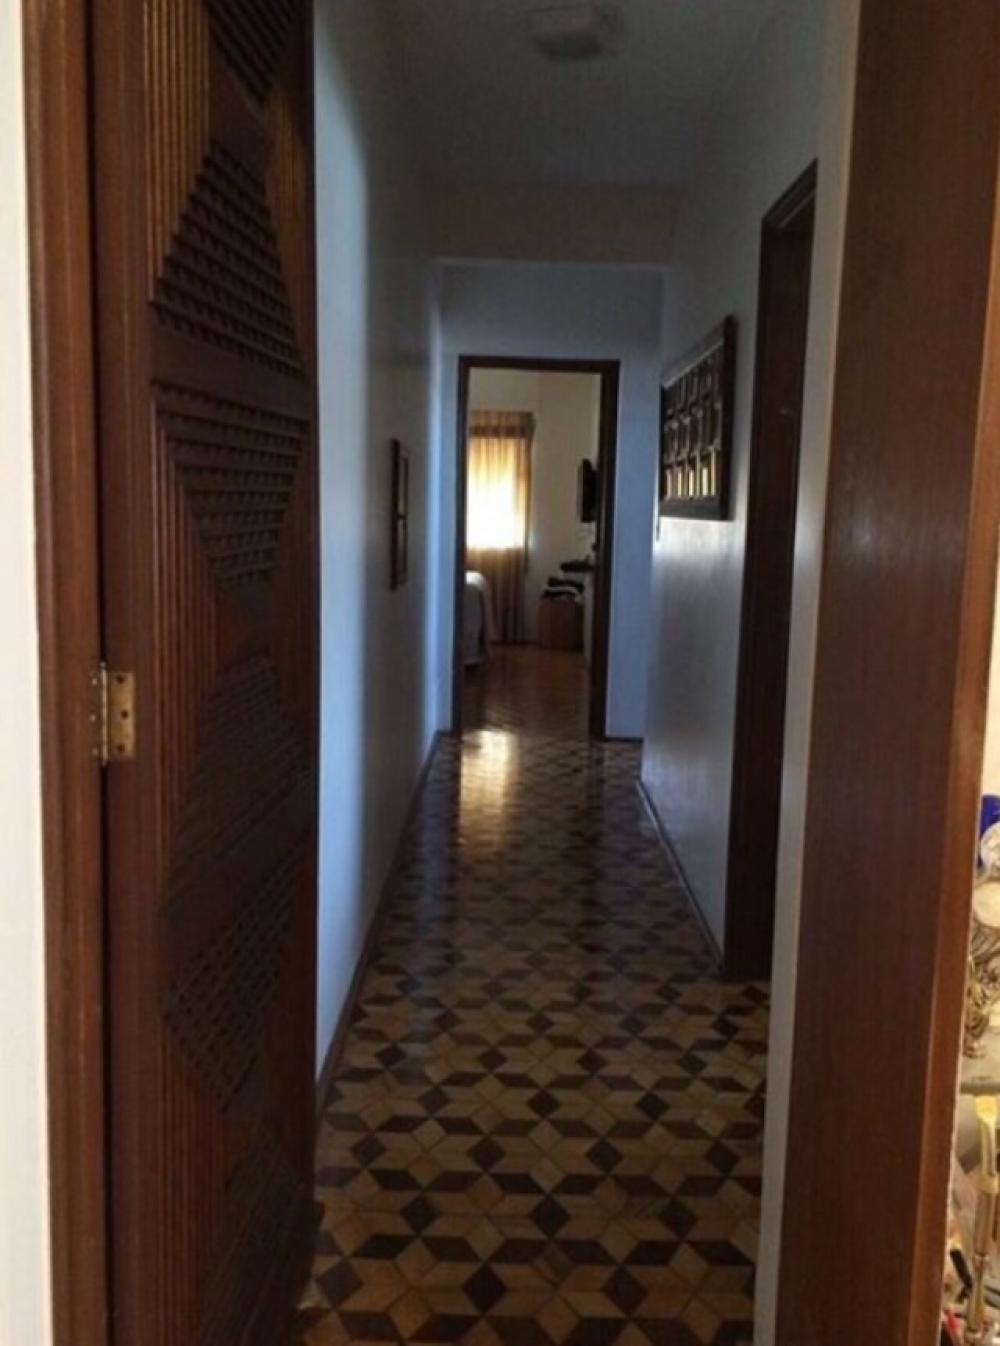 Comprar Apartamento / Padrão em São José do Rio Preto R$ 390.000,00 - Foto 13